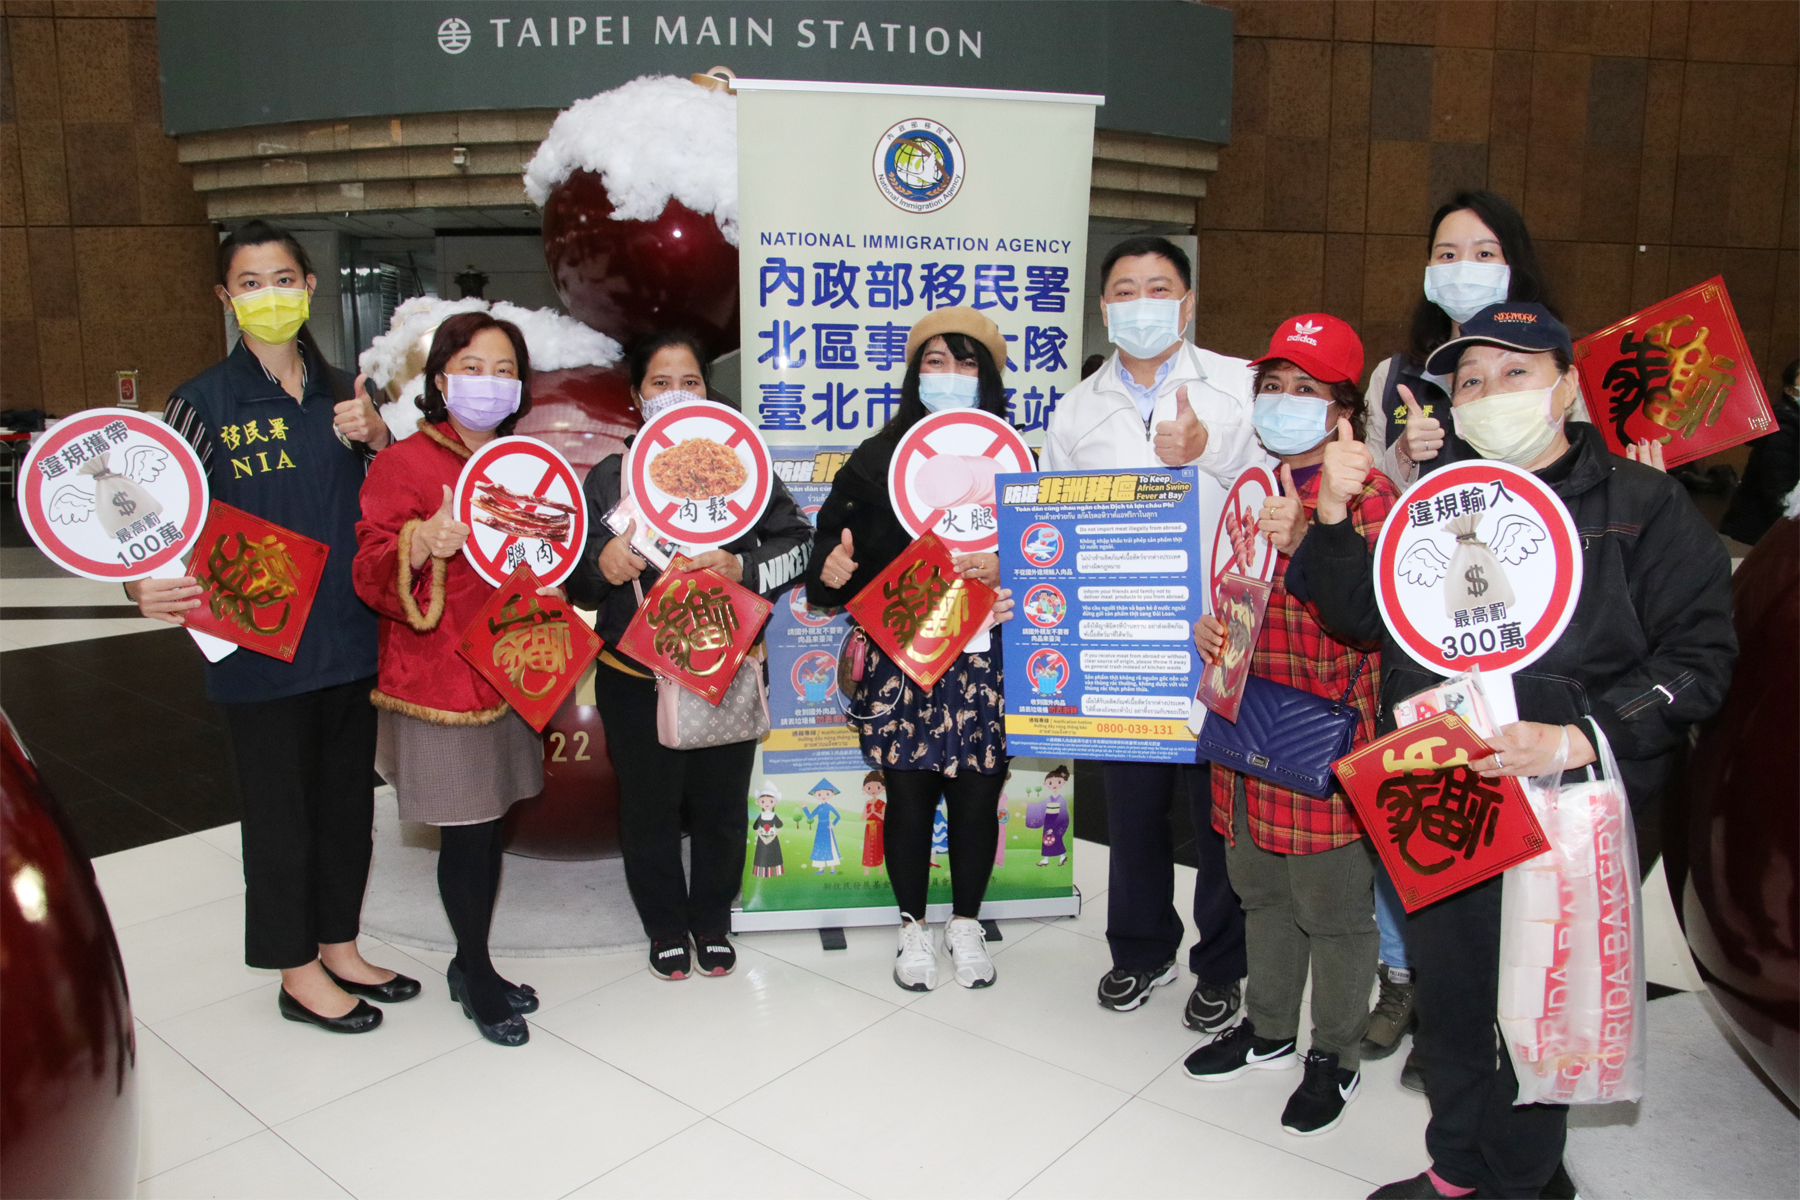 Kantor Layanan Imigrasi Ikut Bantu Tingkatkan Usaha Imbauan Pencegahan Virus Demam Babi Afrika di Stasiun Kereta Api Taipei. Sumber: Kantor Layanan Imigrasi Taipei